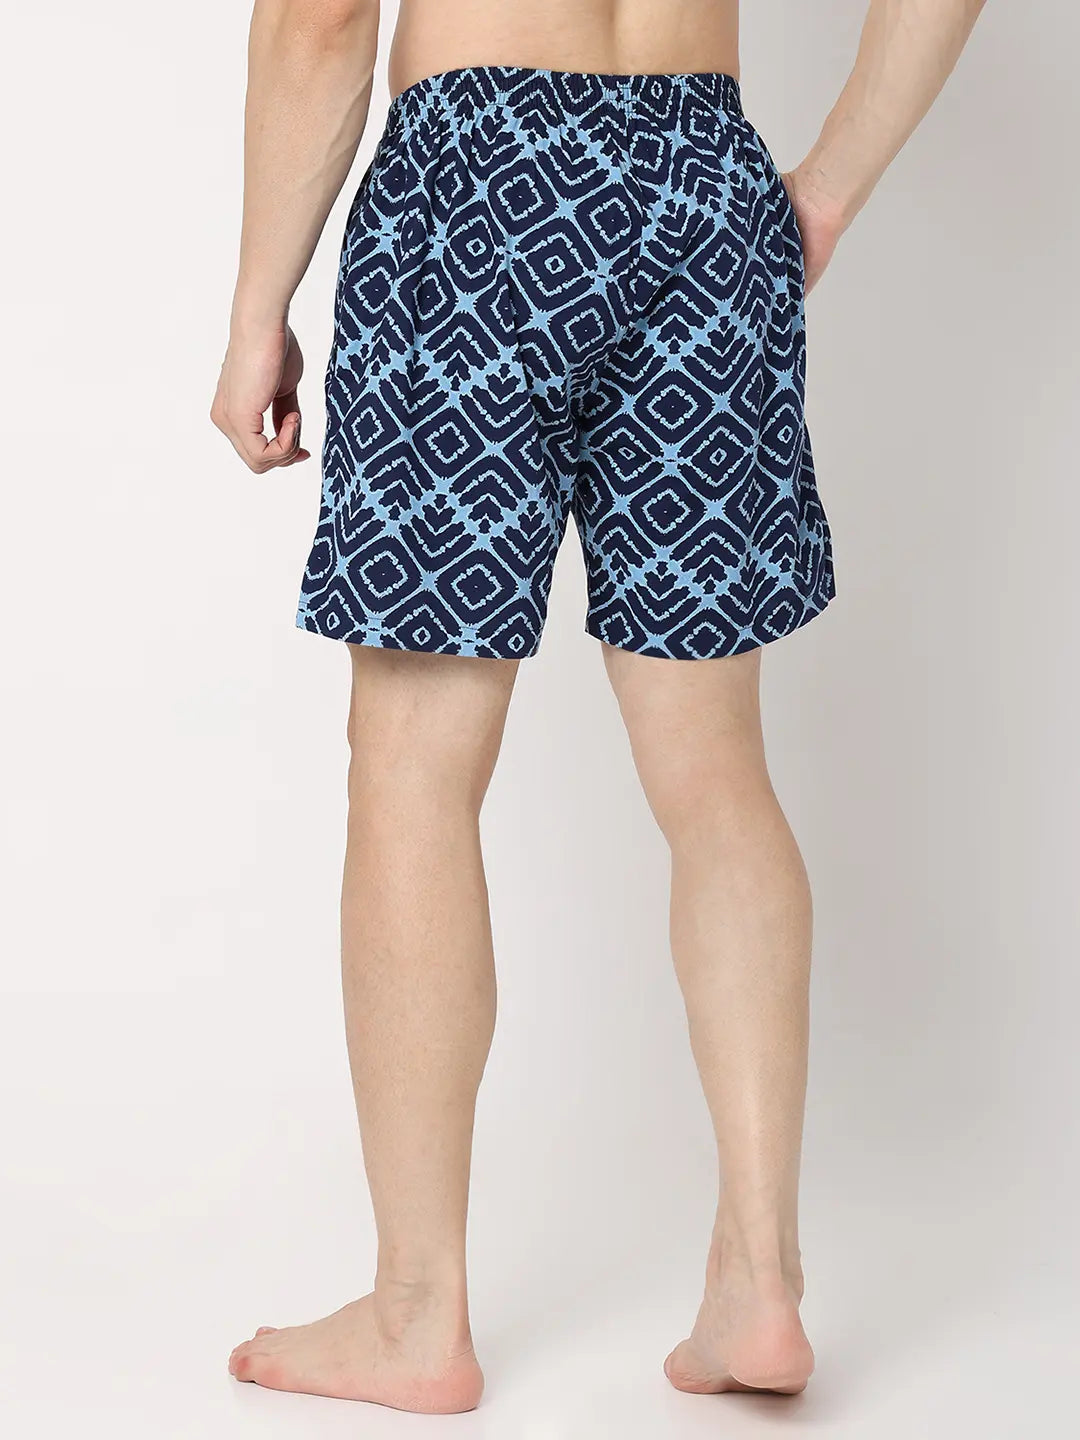 Underjeans by Spykar Men Premium Blue Cotton Blend Regular Fit Boxer Shorts